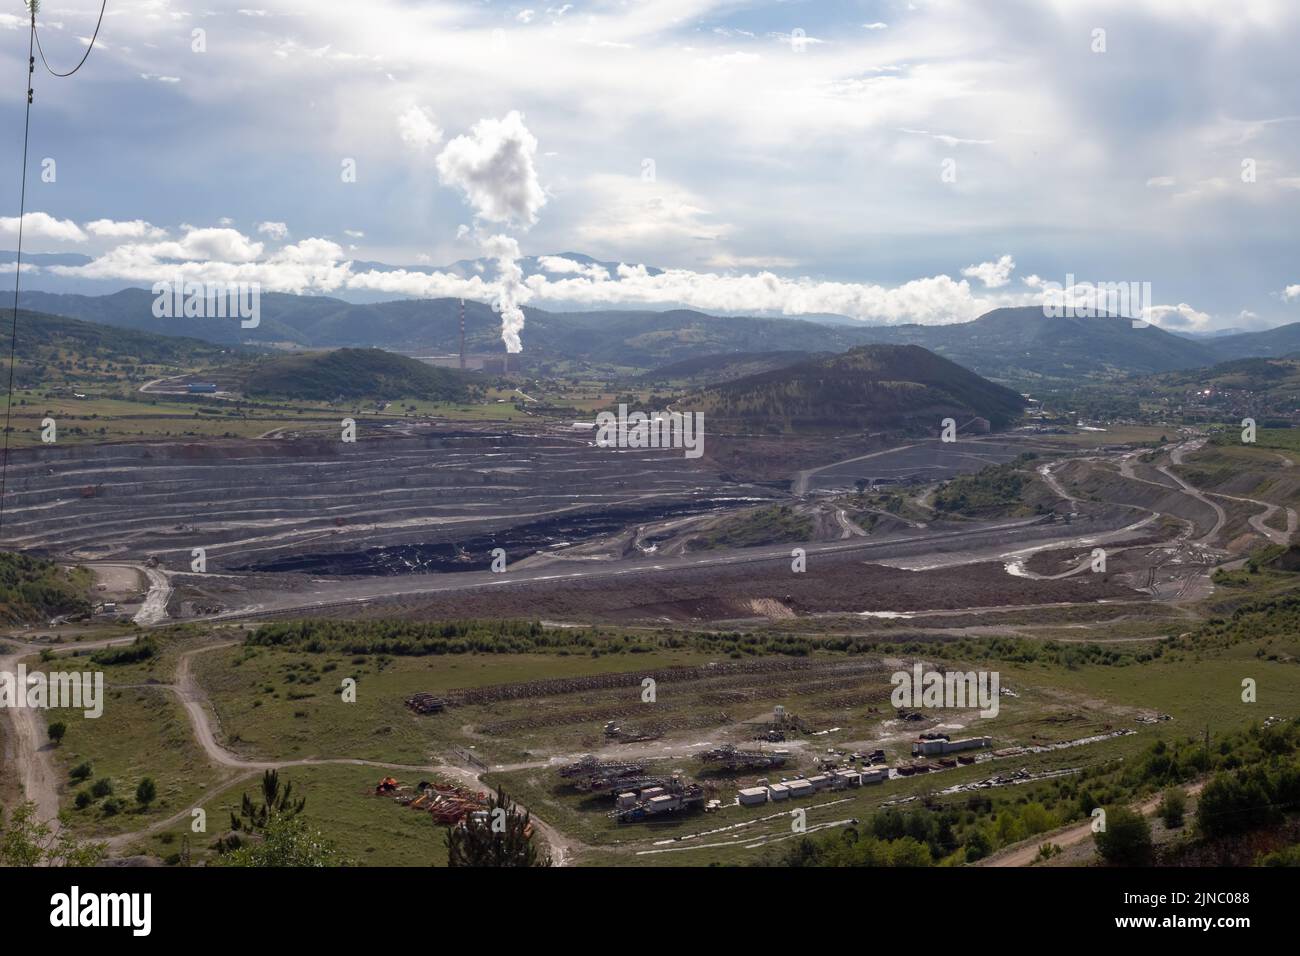 Die größte thermoelektrische Anlage 'Pljevlja' in der Nähe der Stadt Pljevlja in Montenegro, mit großen Schornsteinen in einer ländlichen Landschaft Stockfoto